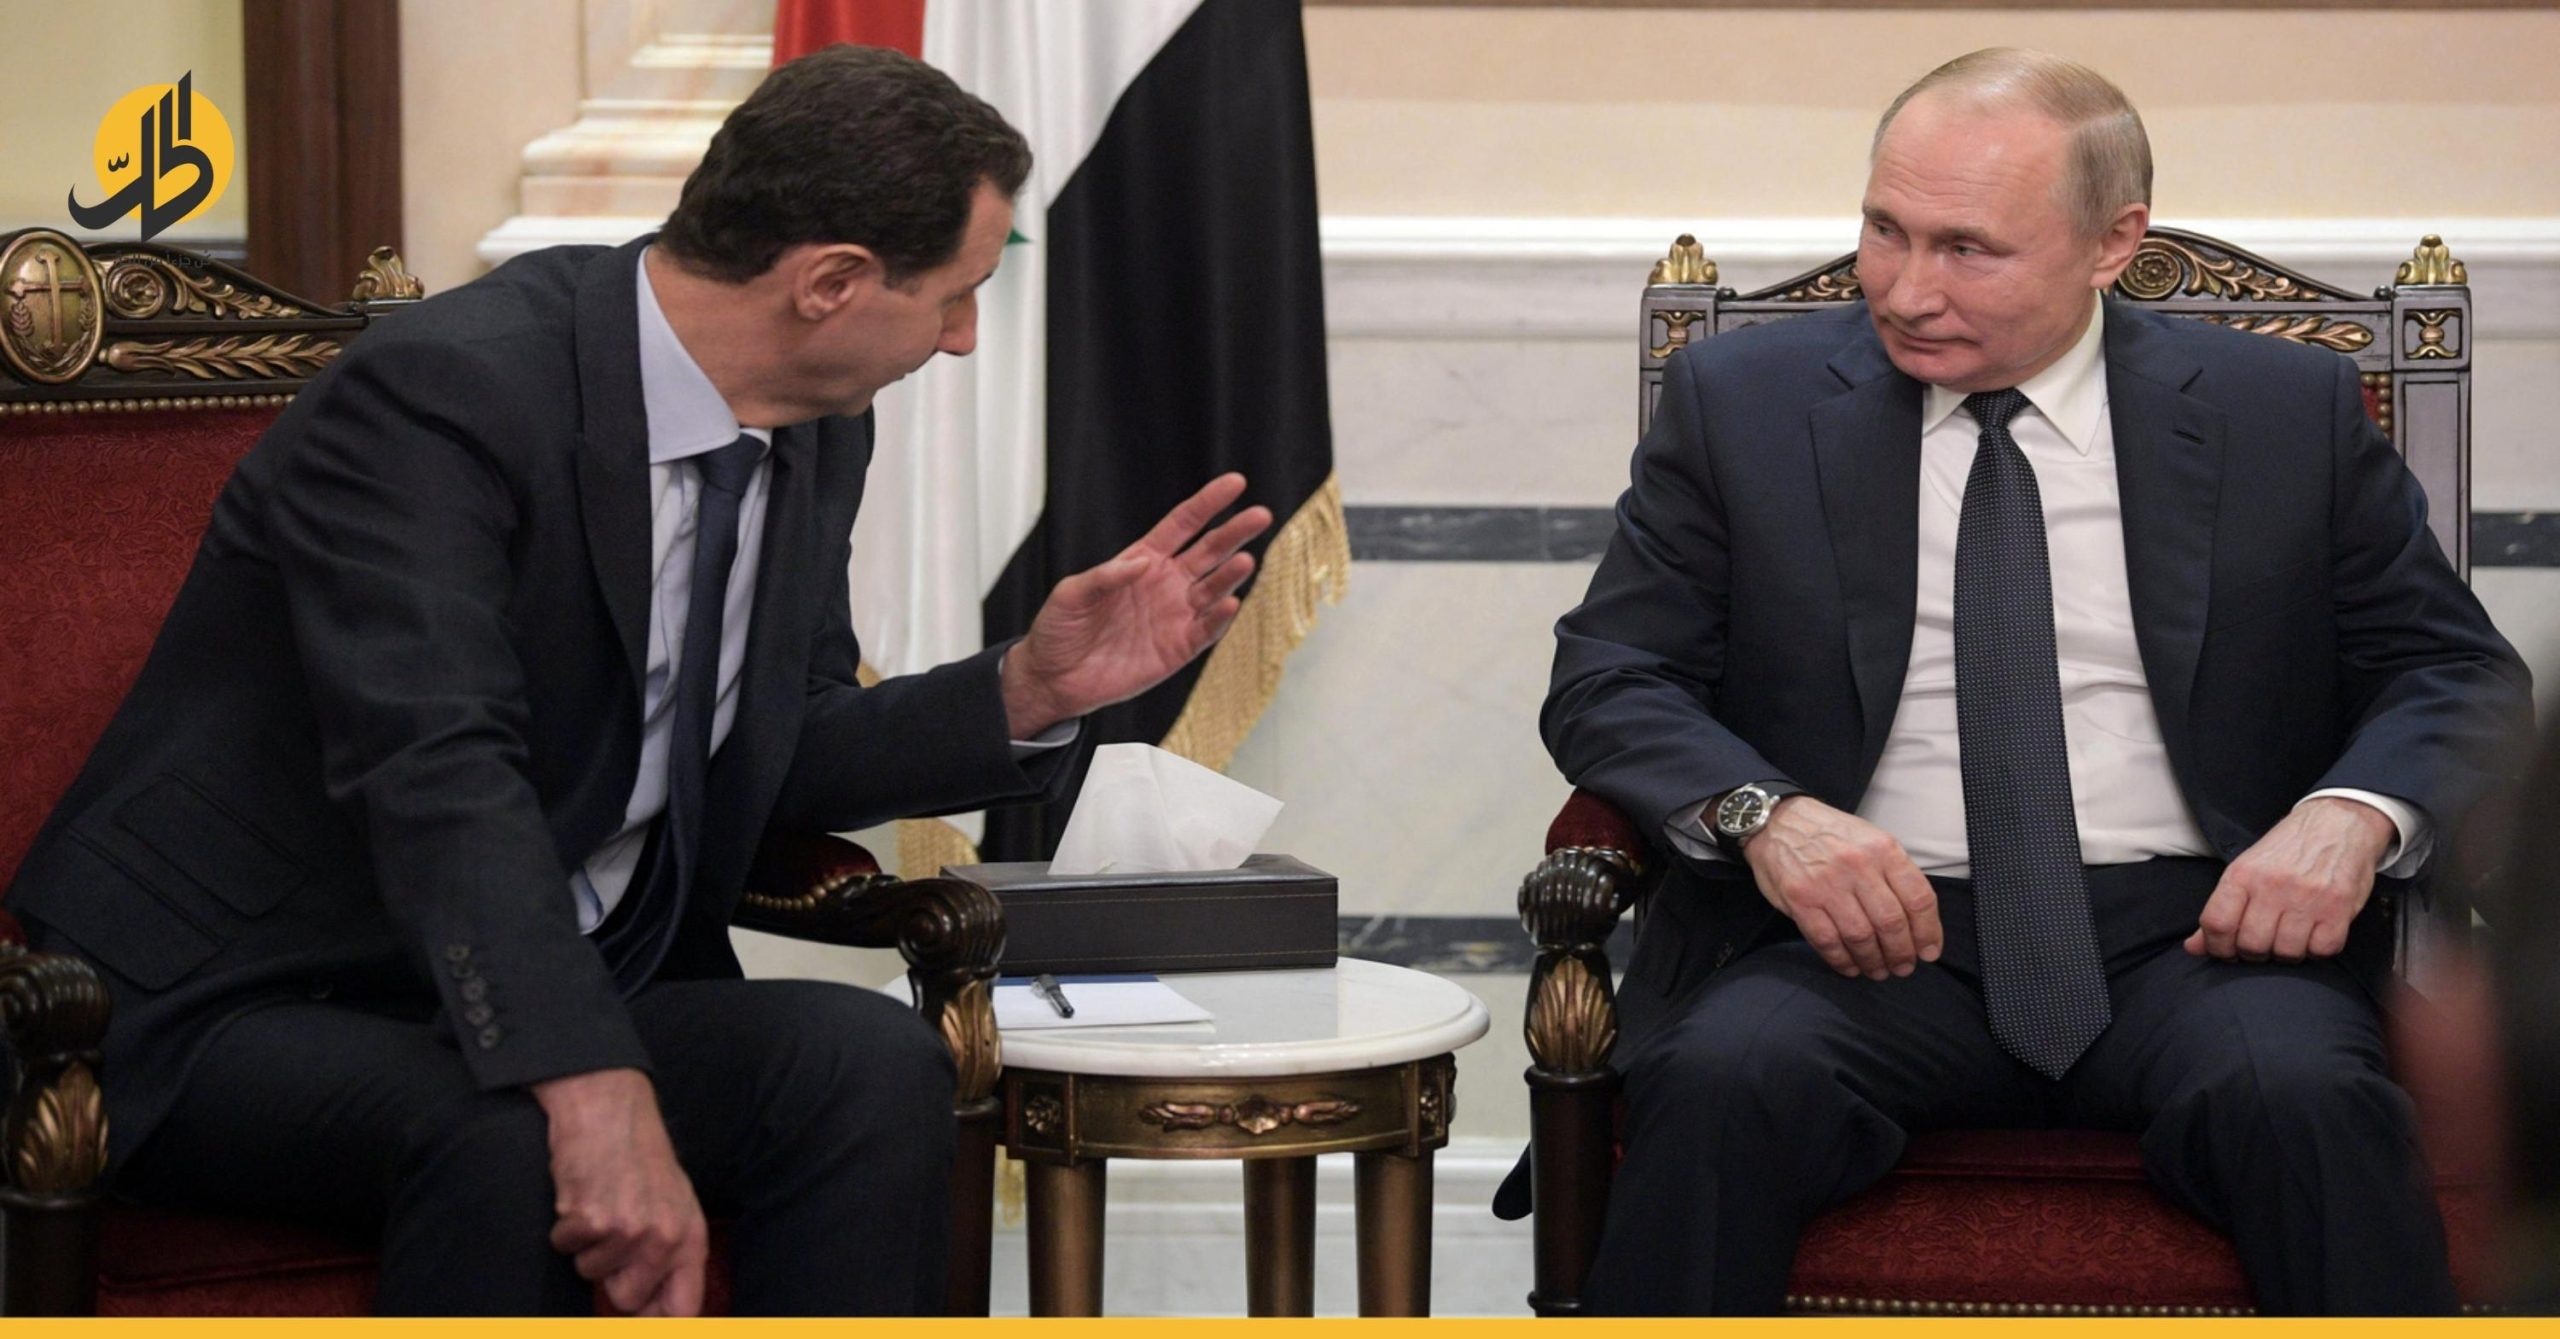 ما خيارات دمشق بعد انتهاء مهمة روسيا في سوريا؟